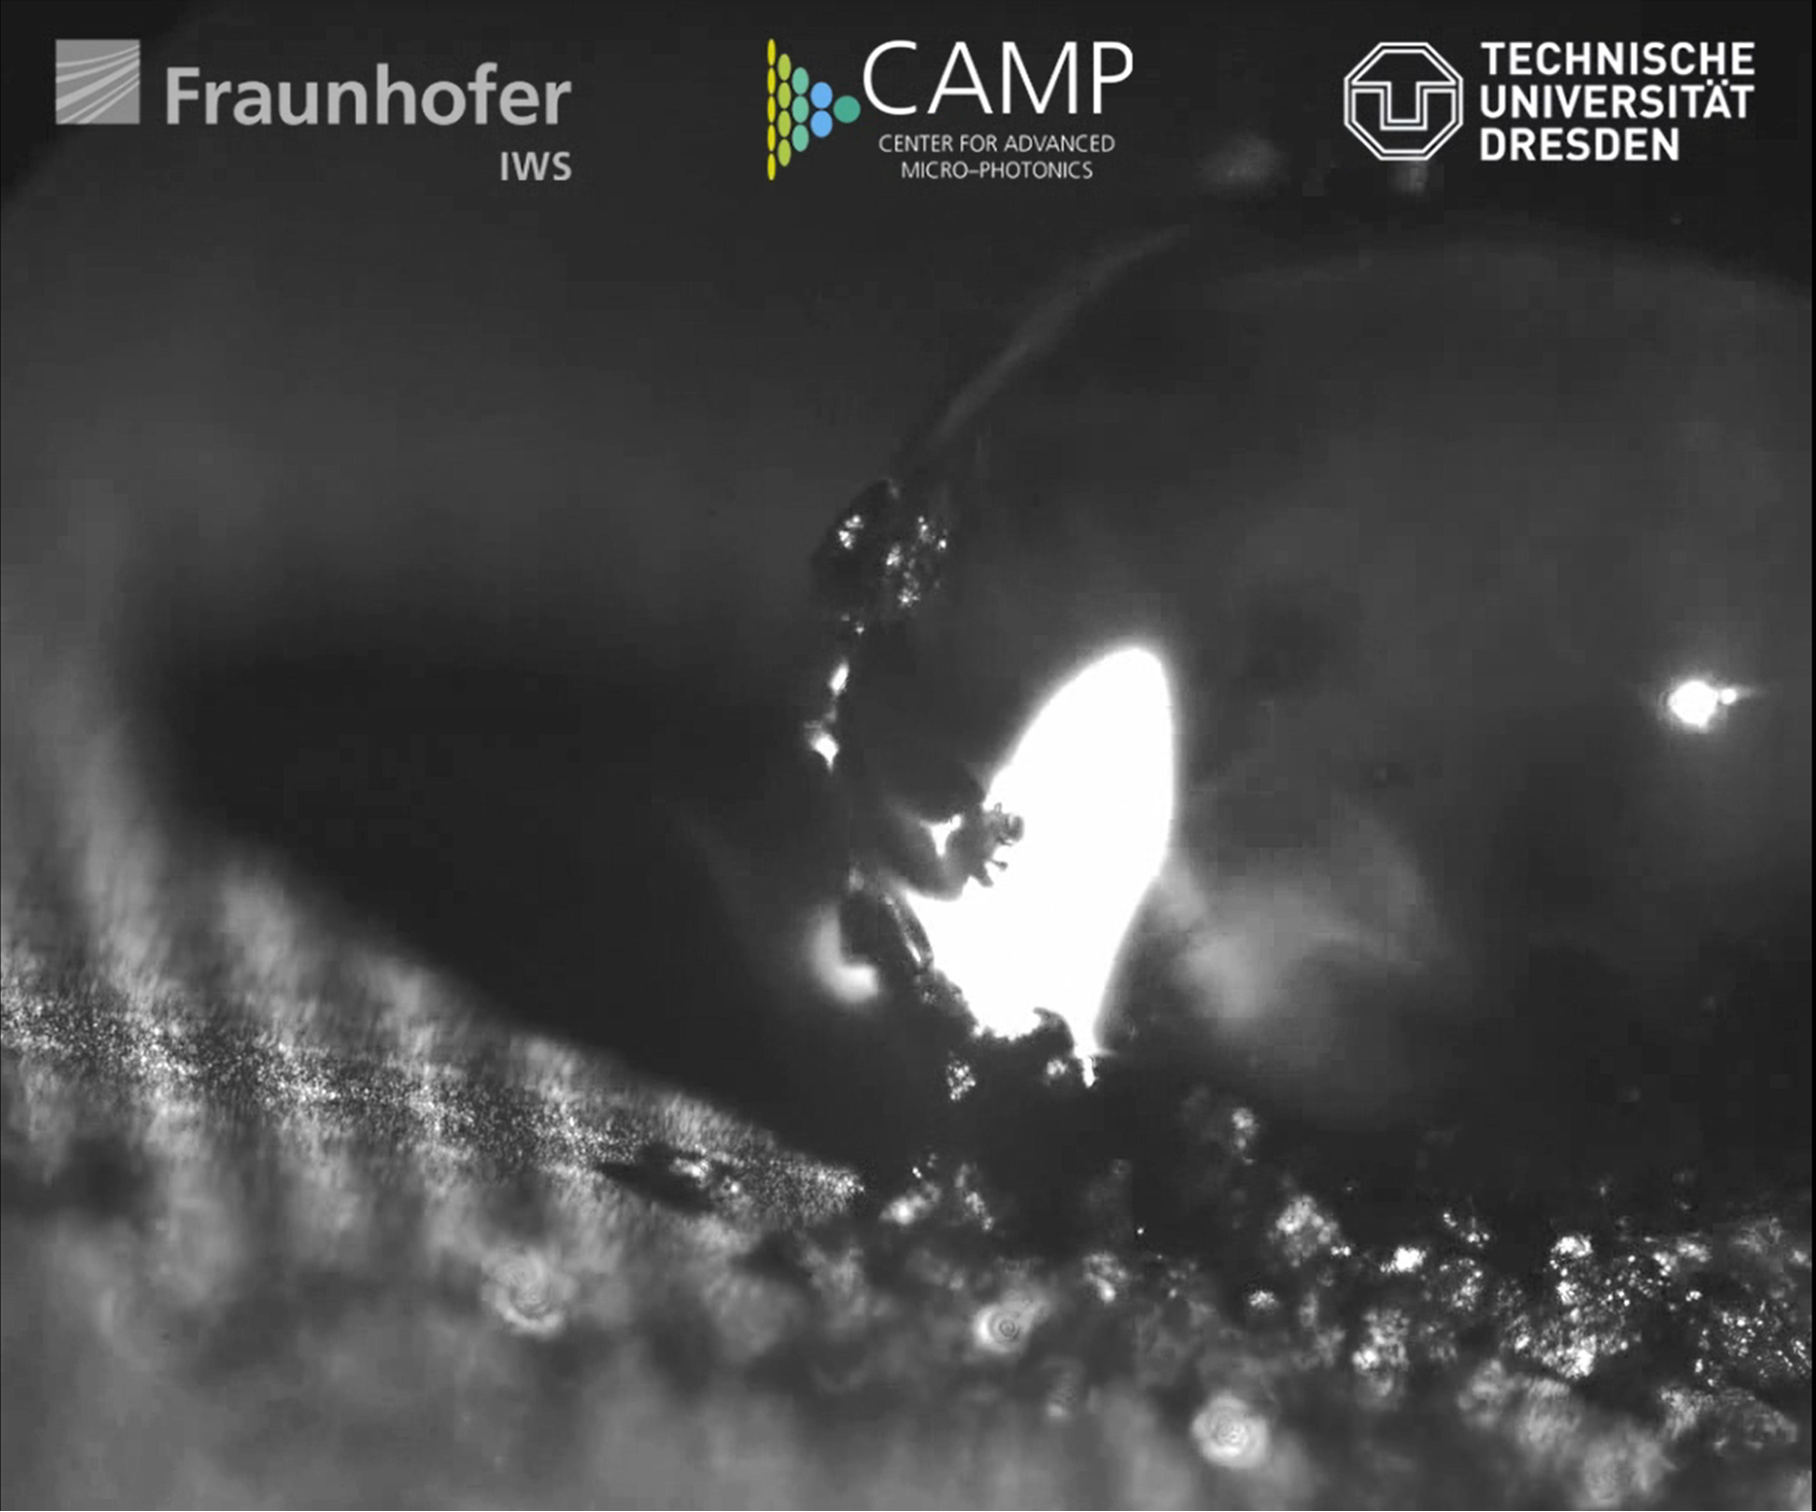 Wassertropfen haften der selbstreinigenden Aluminium-Oberfläche nicht an. Diese hat ein Wissenschaftlerteam des »CAMP« mit direkter Laser-Interferenz-Musterung (DLIP) funktionalisiert.